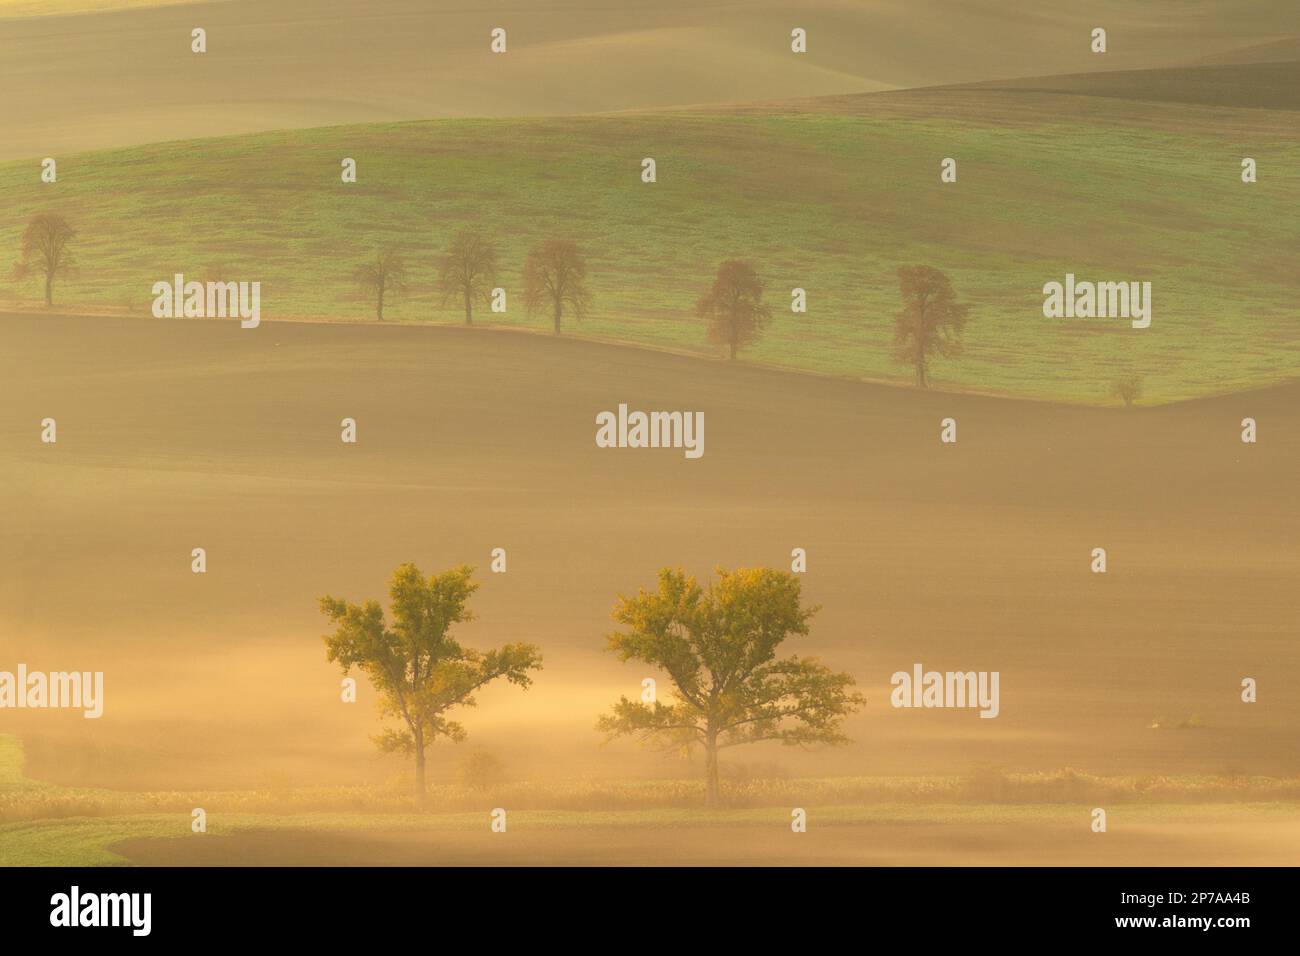 Magnifiques champs moraves avec des avenues d'arbres enveloppées dans le brouillard du matin. République tchèque, Moravie, République tchèque, Europe Banque D'Images